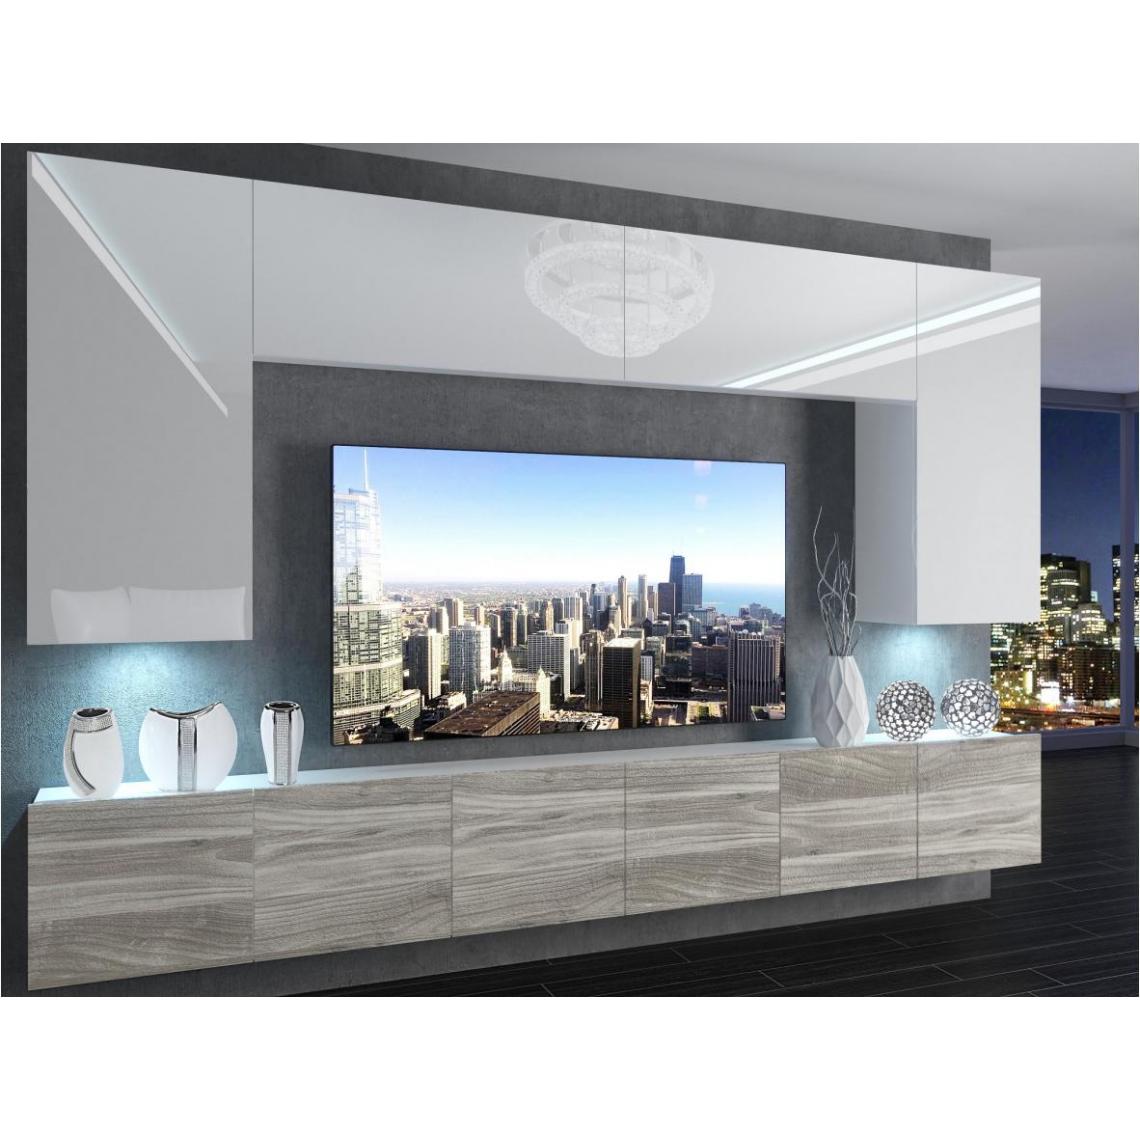 Hucoco - SILLEA - Ensemble meubles TV - Unité murale largeur 300 cm - Mur TV à suspendre finition gloss - Sans LED - Blanc - Meubles TV, Hi-Fi